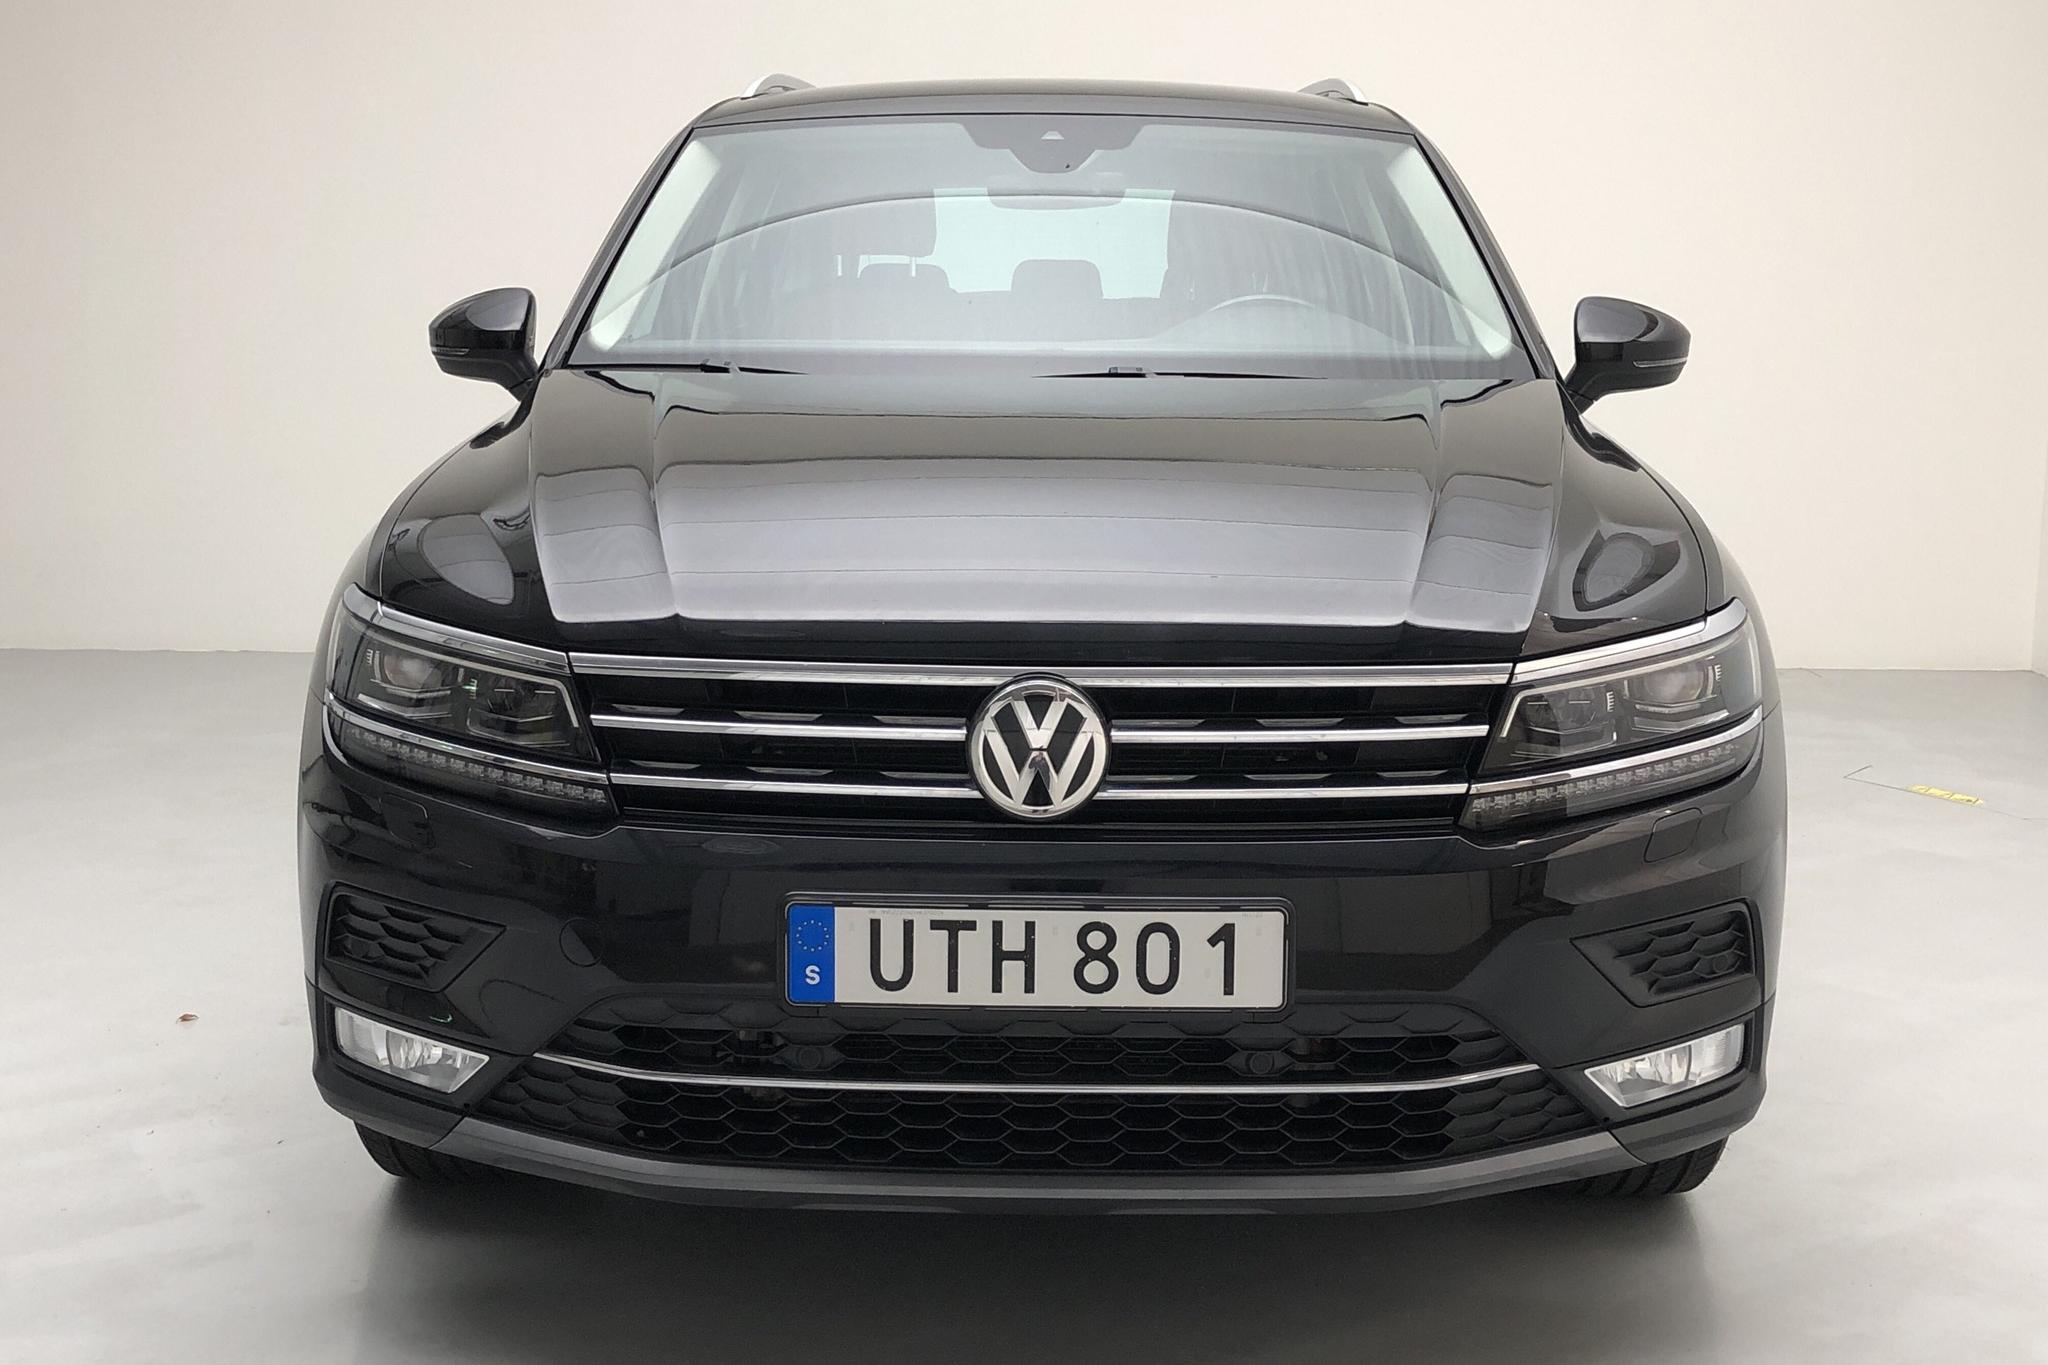 VW Tiguan 2.0 TDI 4MOTION (190hk) - 134 760 km - Automatic - black - 2017